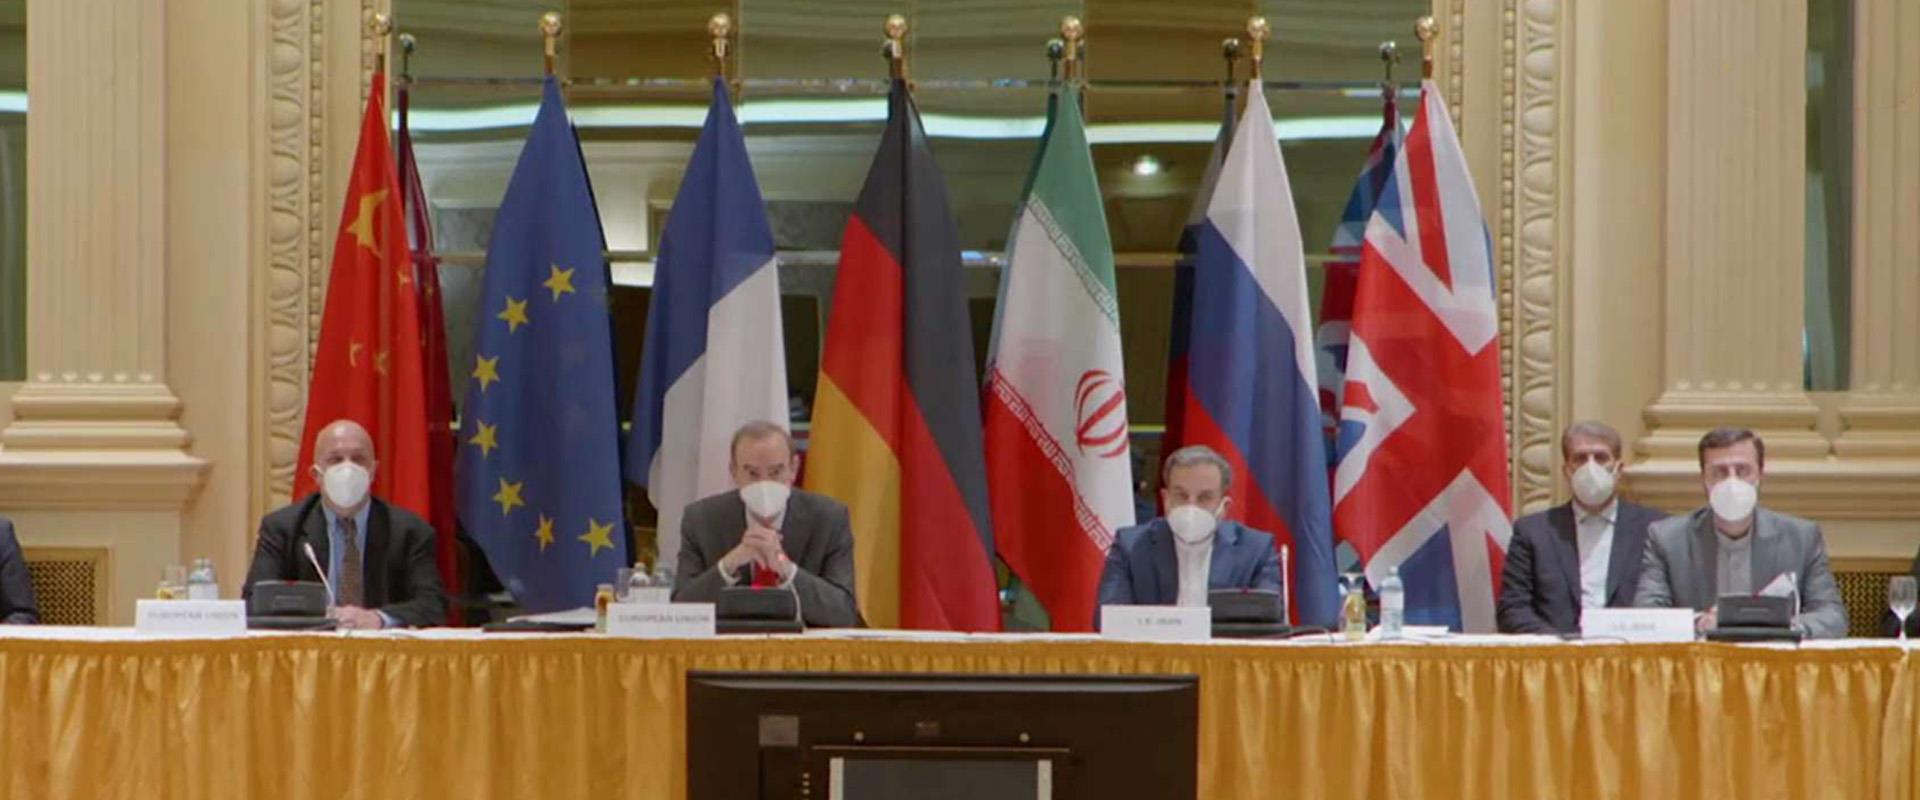 שיחות המשא ומתן בין המעצמות ואיראן